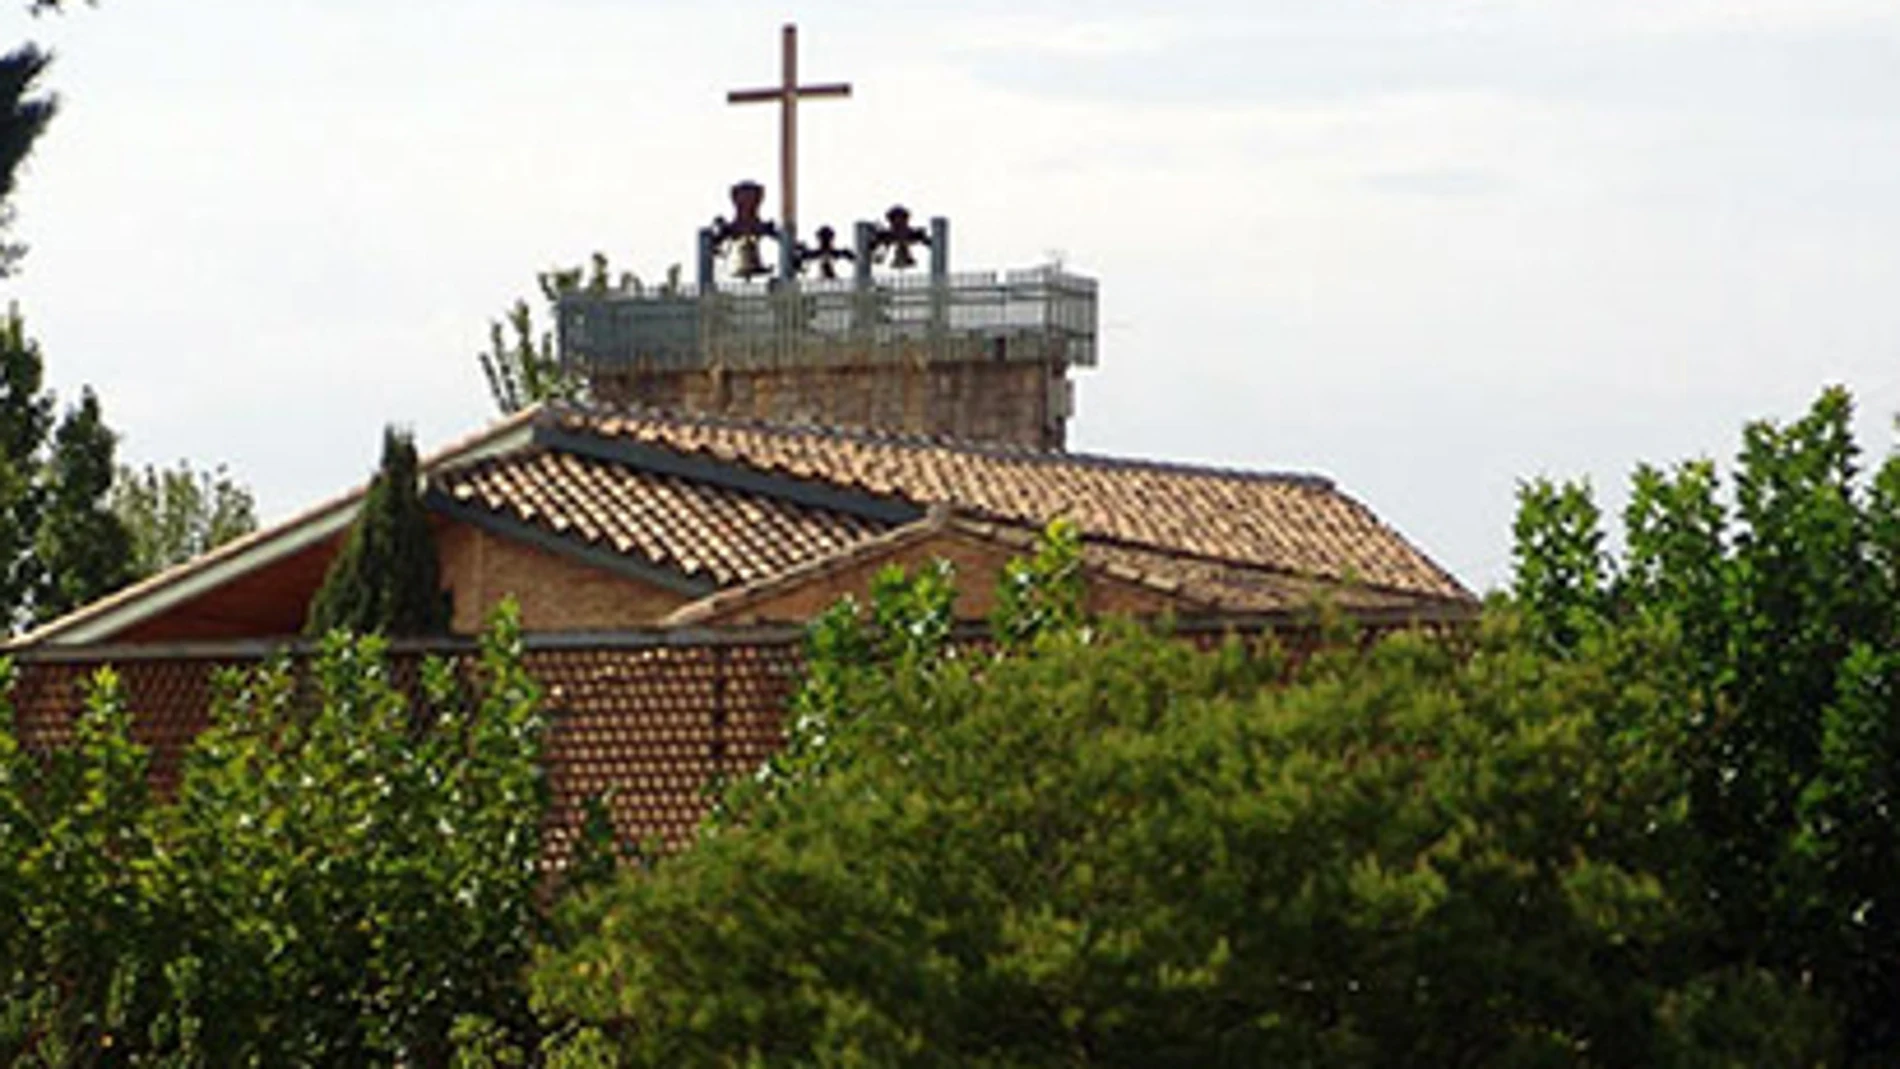 Roban 1,5 millones de euros de un convento de Zaragoza